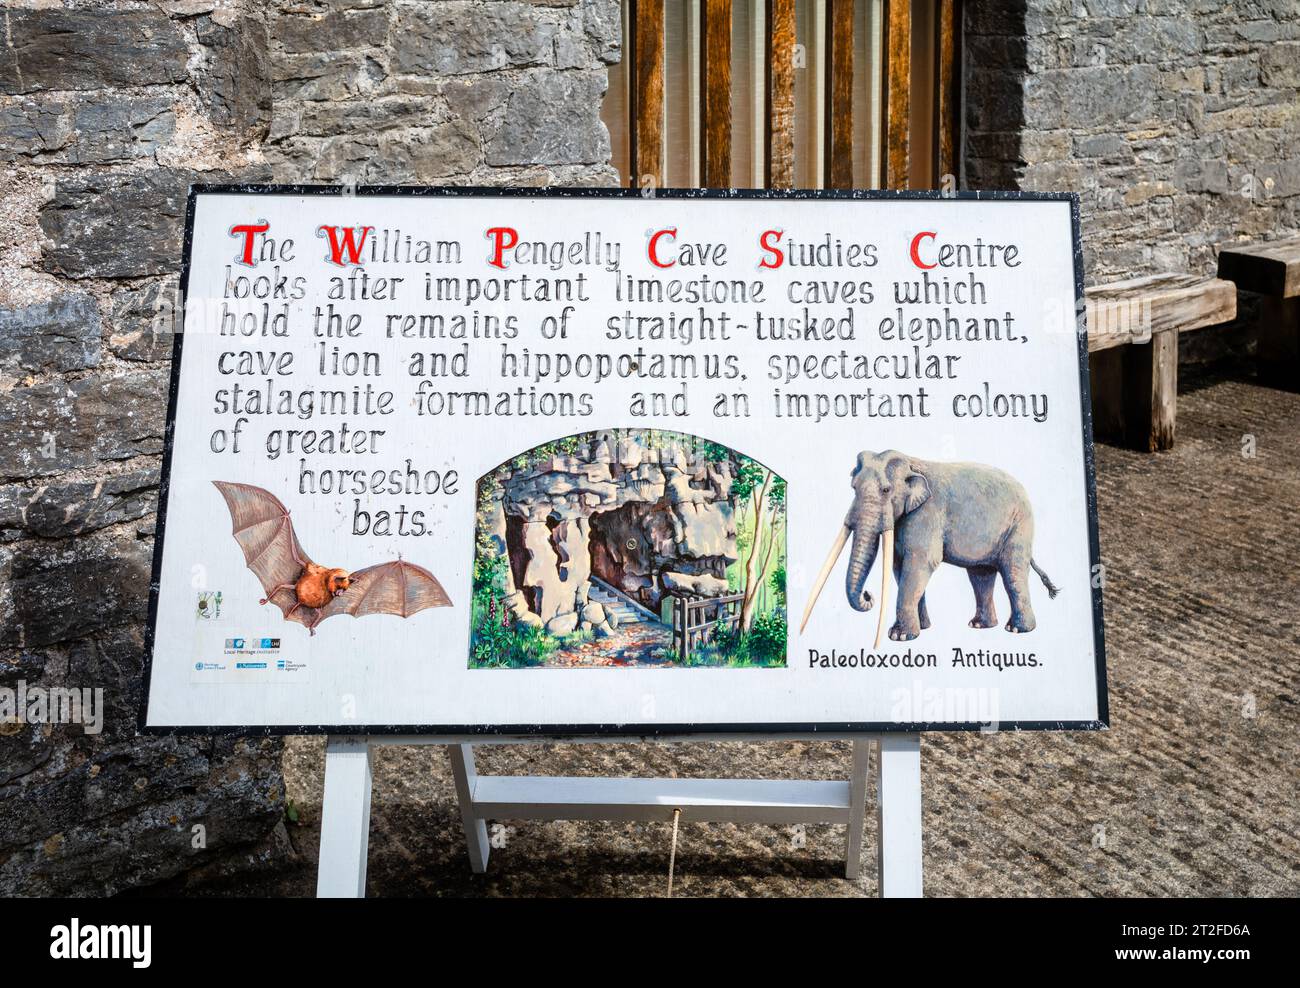 Un panneau blanc avec des images d'un mamouth et d'une chauve-souris décrivant le rôle du William Pengelly Cave Studies Centre dans la protection et l'étude de li ancien Banque D'Images